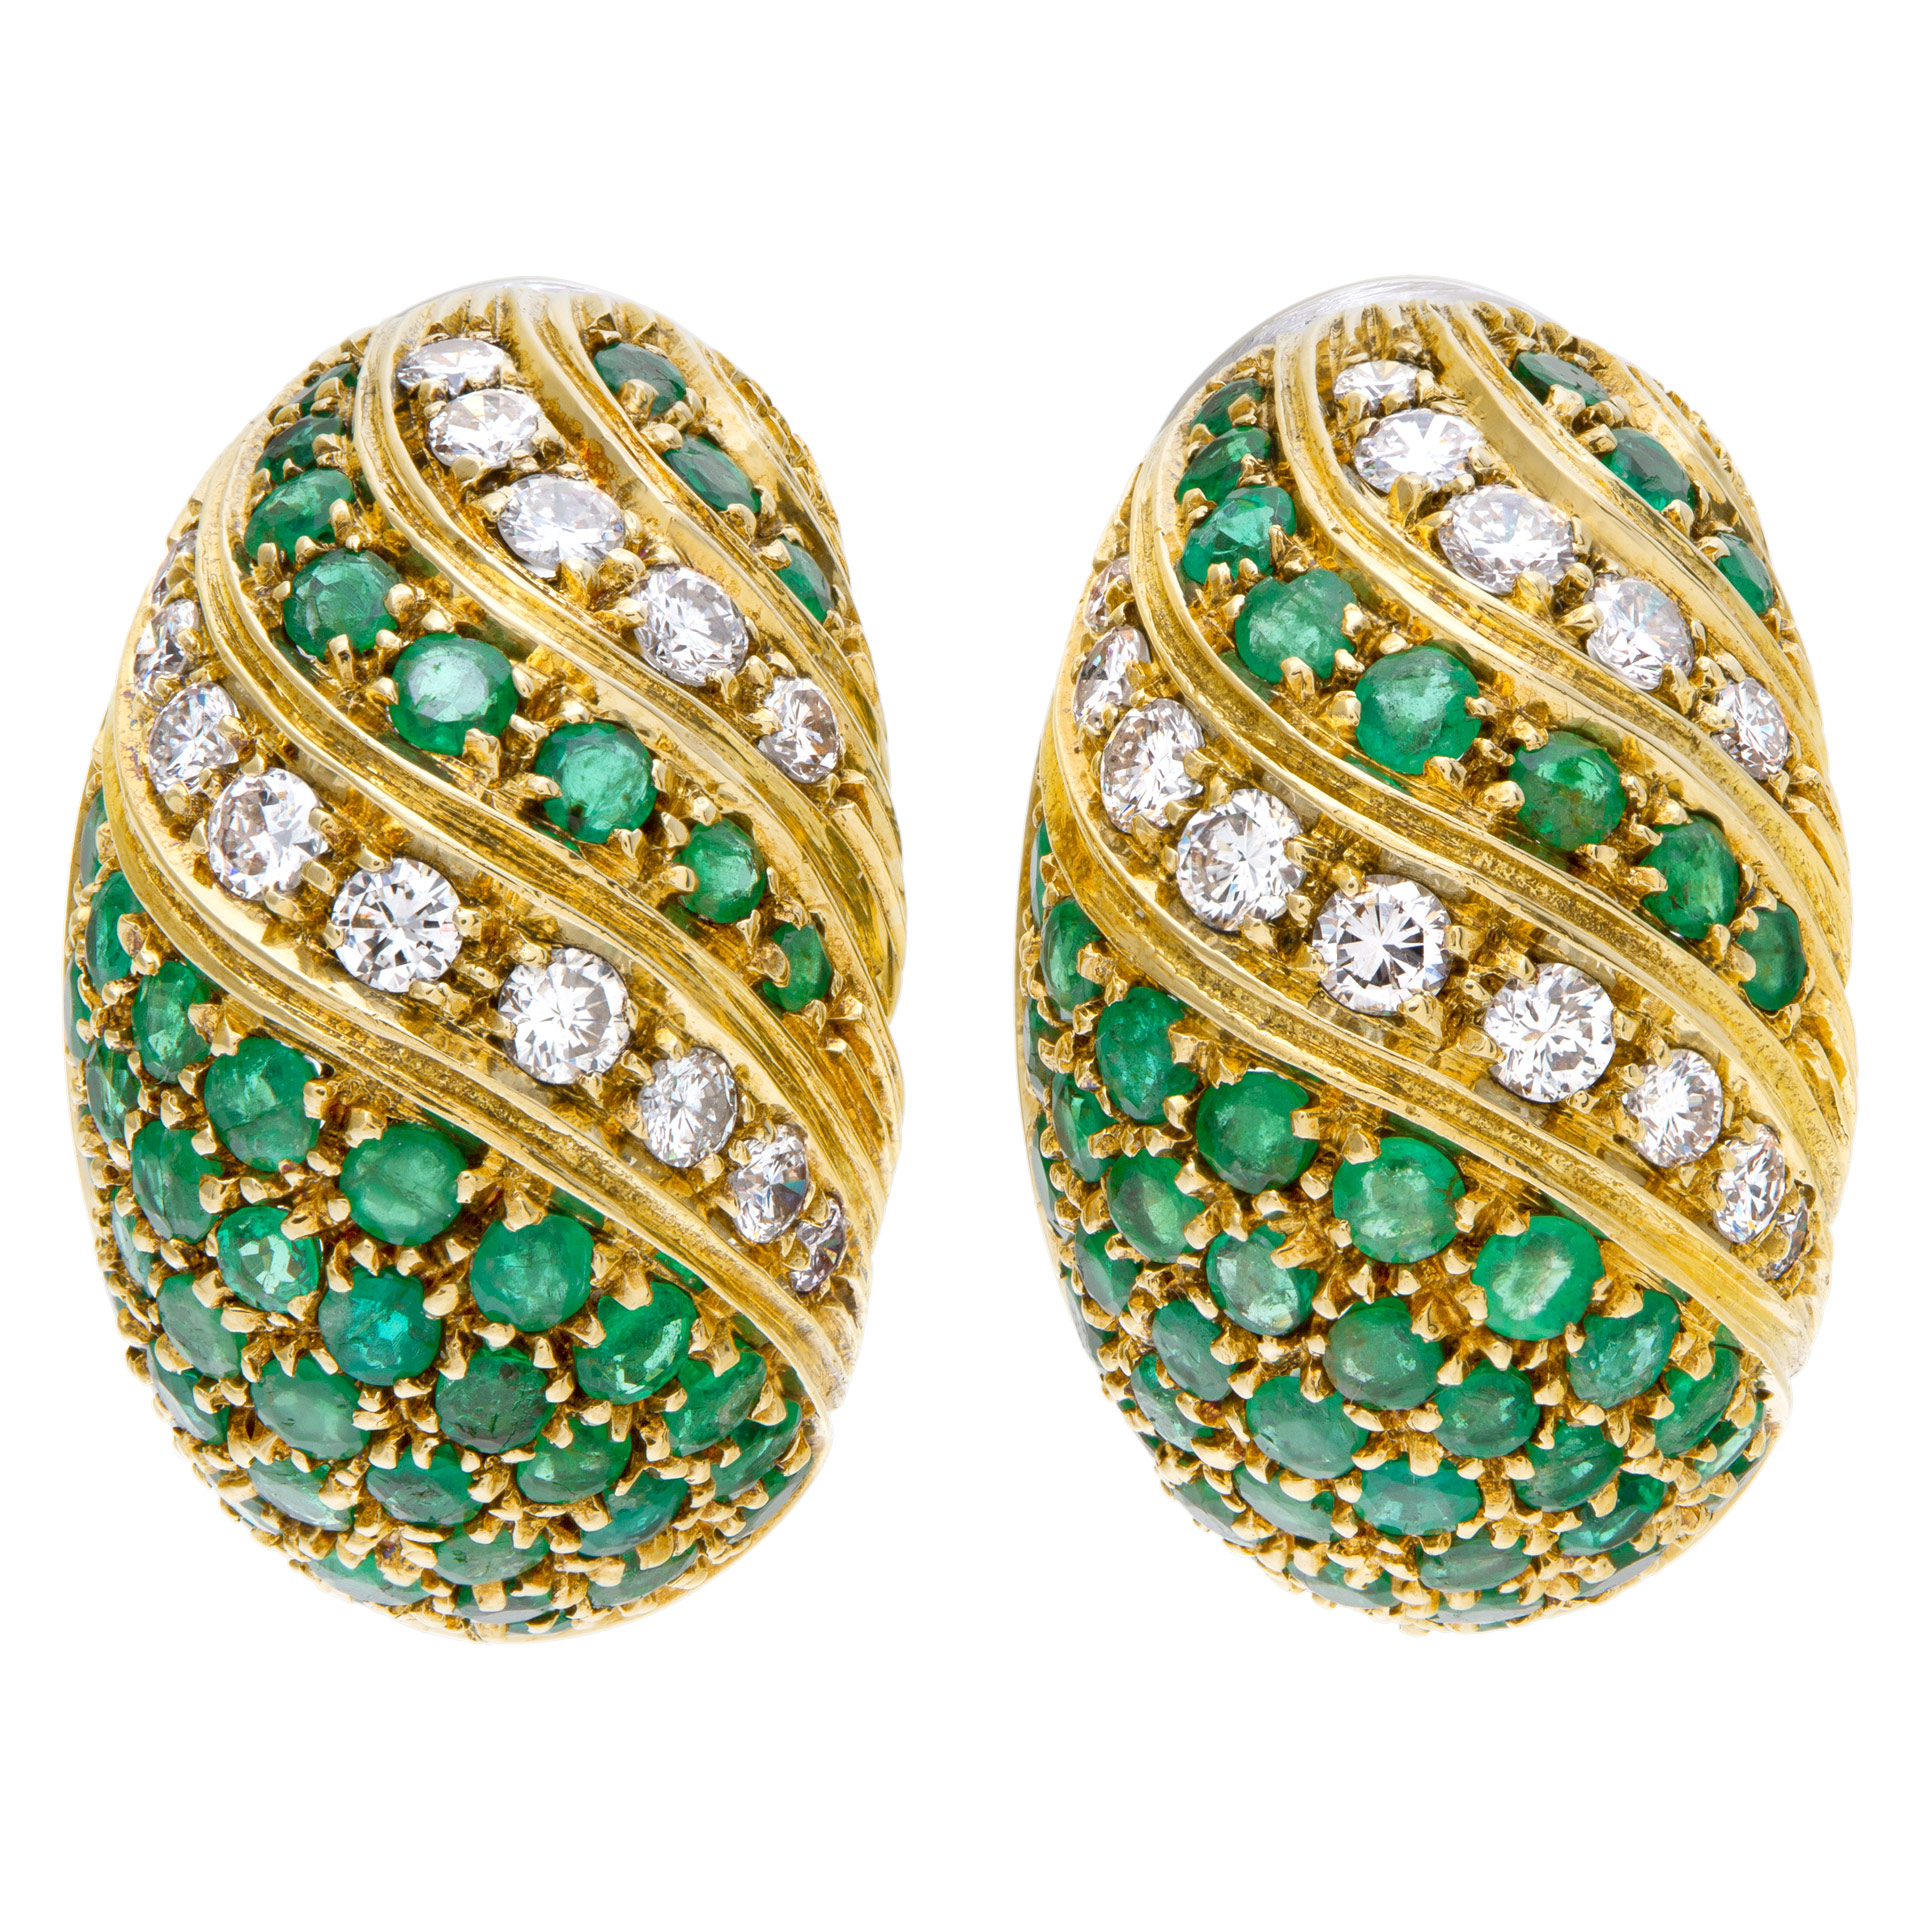 Emerald & diamond huggie earrings in 18k